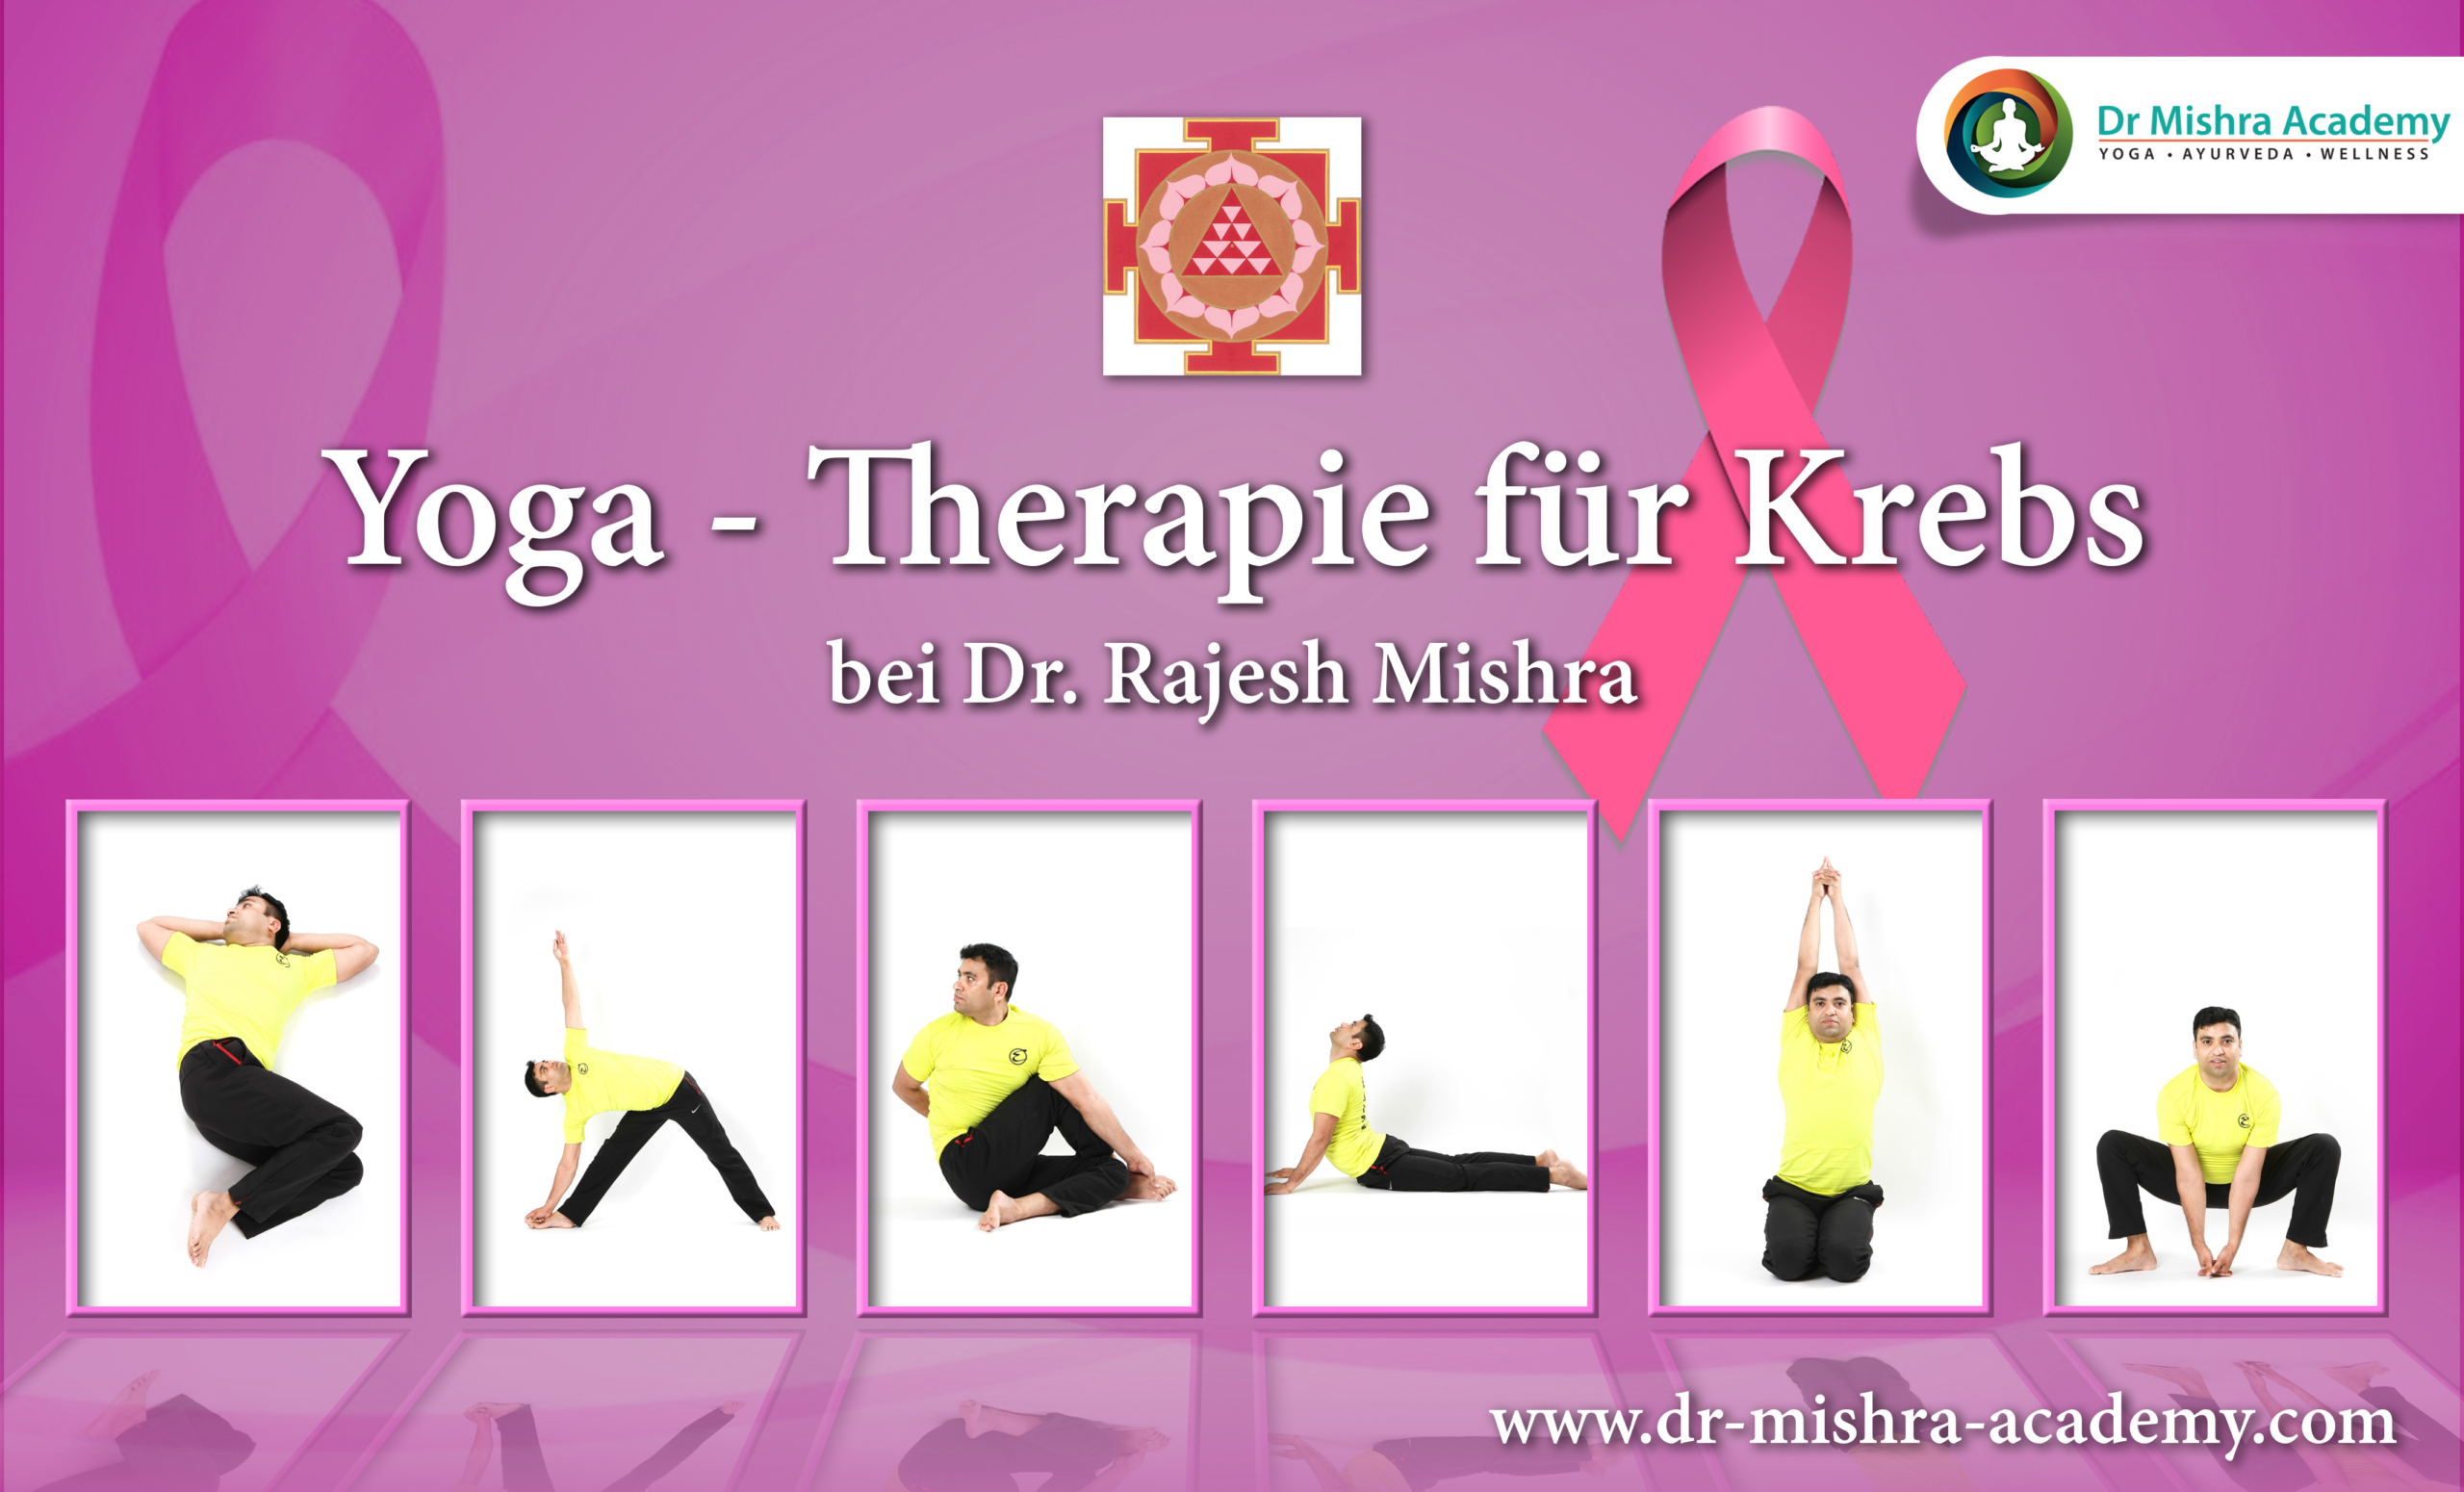 Yogatherapie bei KrebsDer Hintergrund des Posters ist hellrosa. Das Logo der Dr. Mishra Academy befindet sich oben rechts.Unten sind 6 Asanas platziert. 